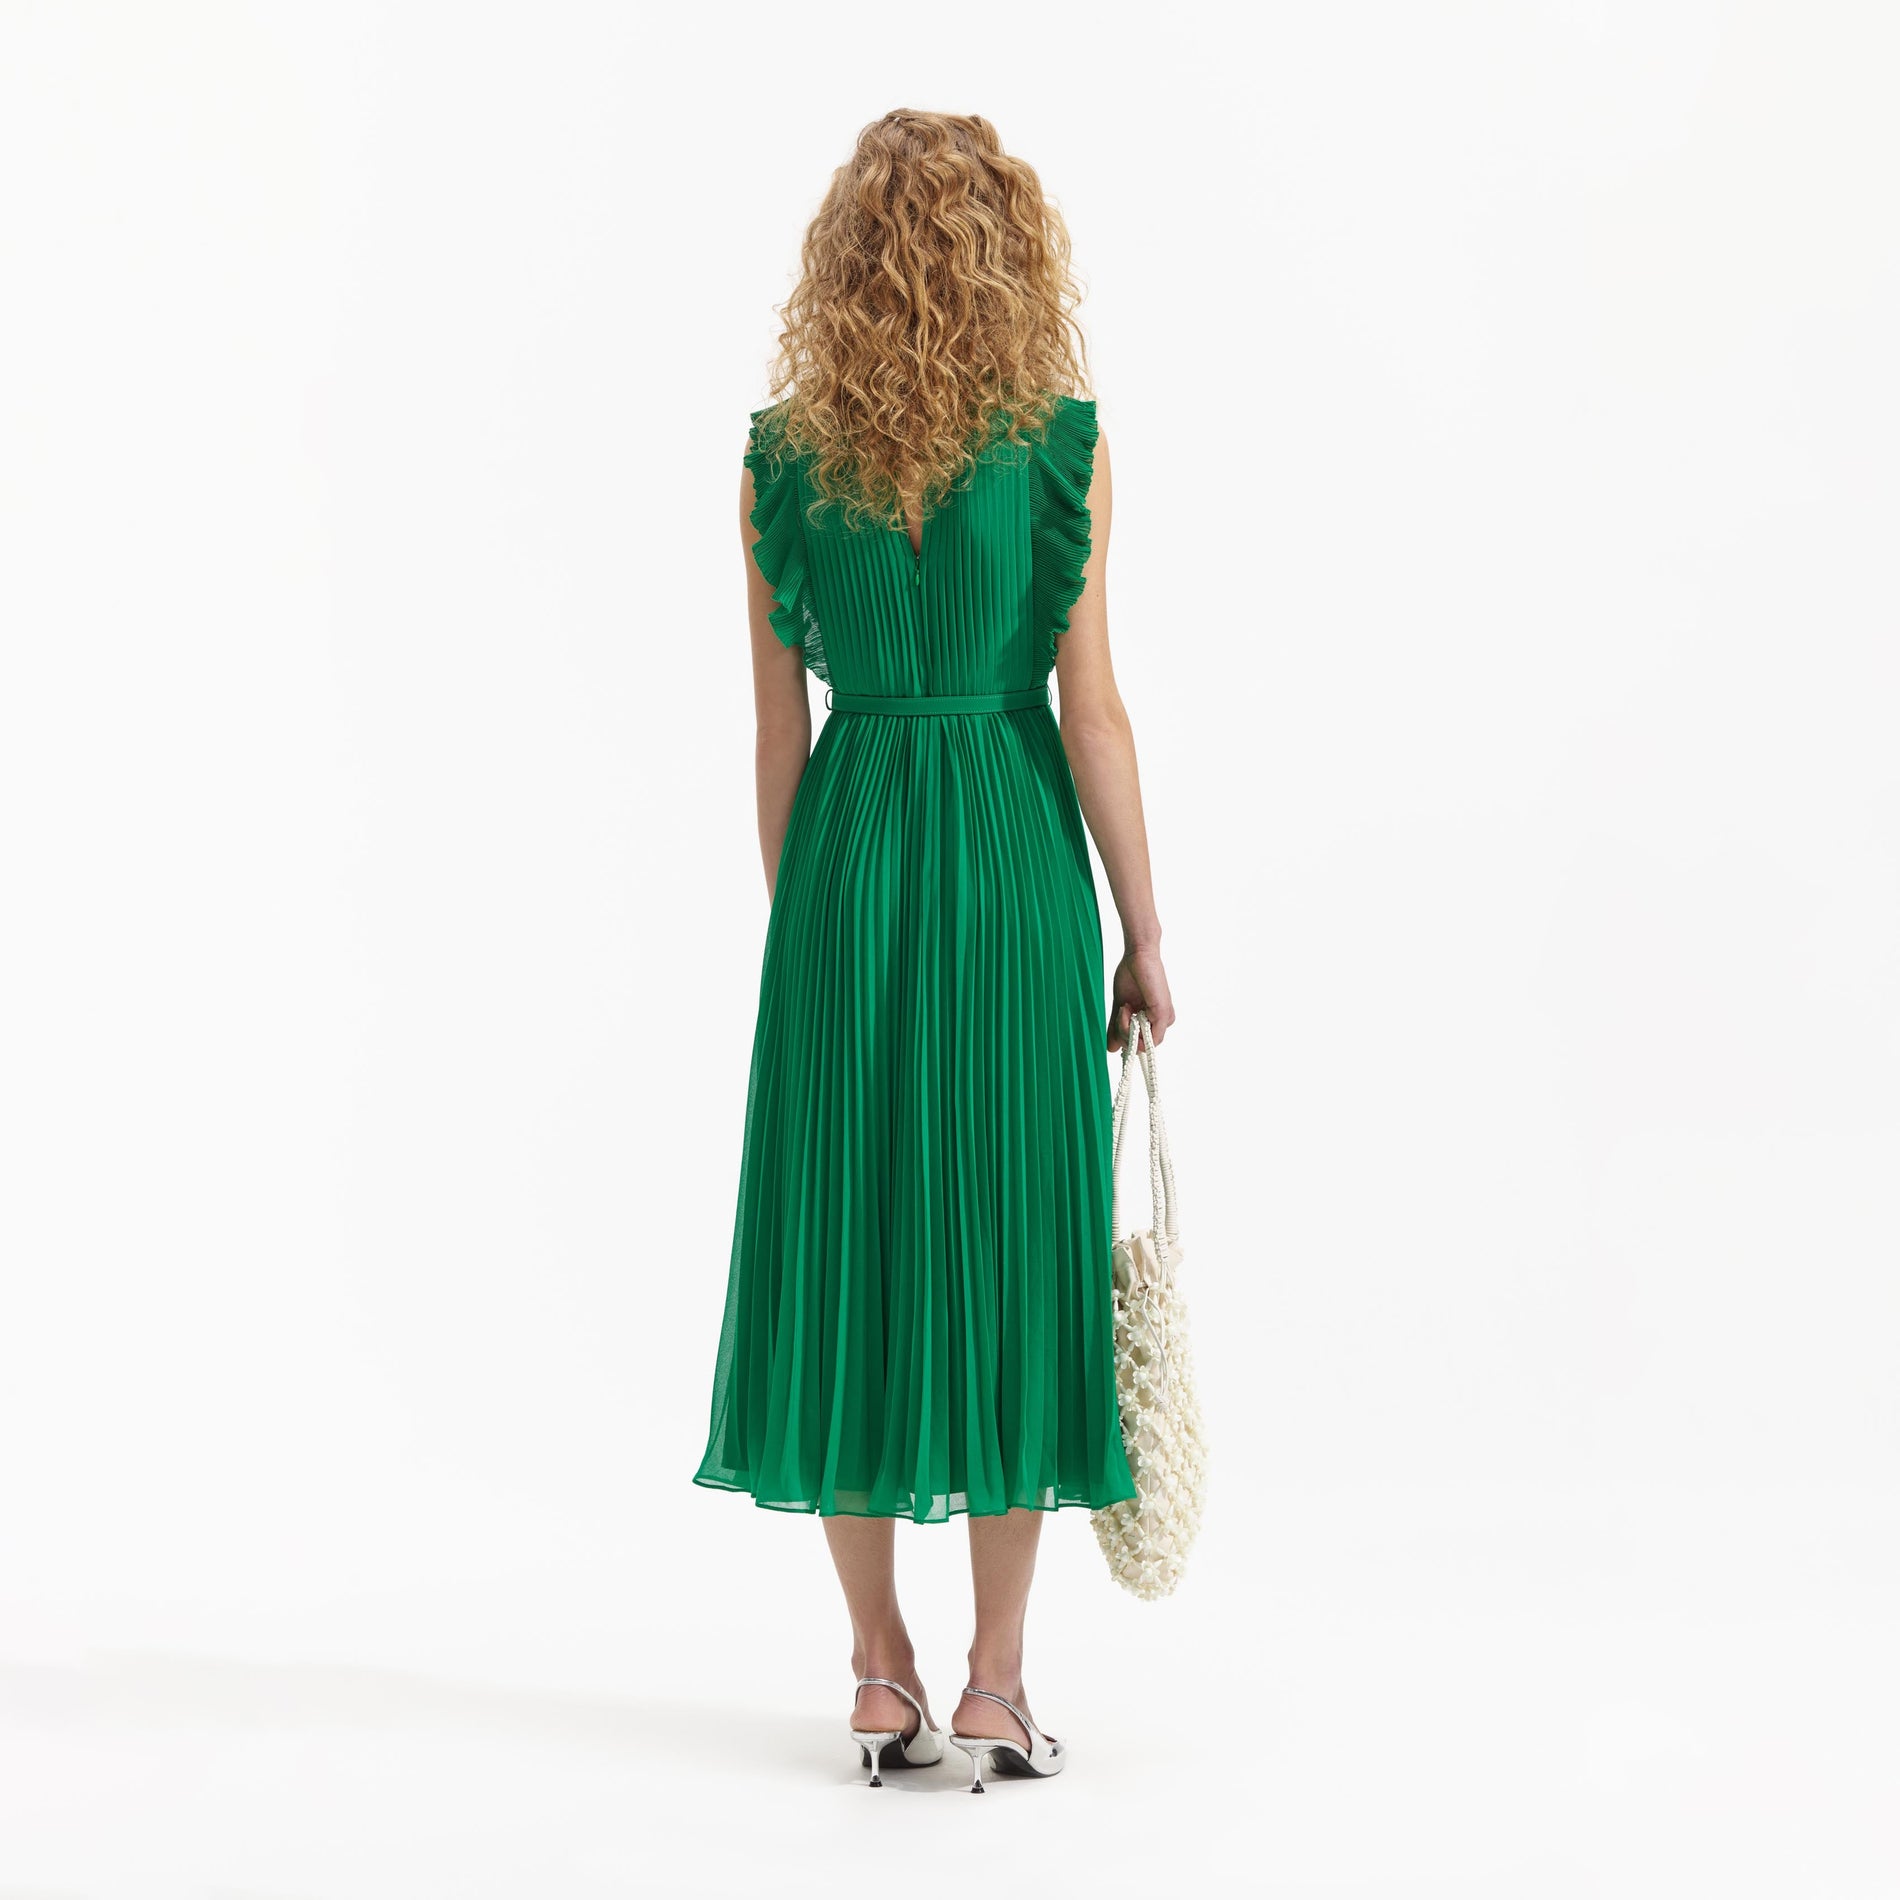 A Woman wearing the Green Chiffon Sleeveless Ruffle Midi Dress